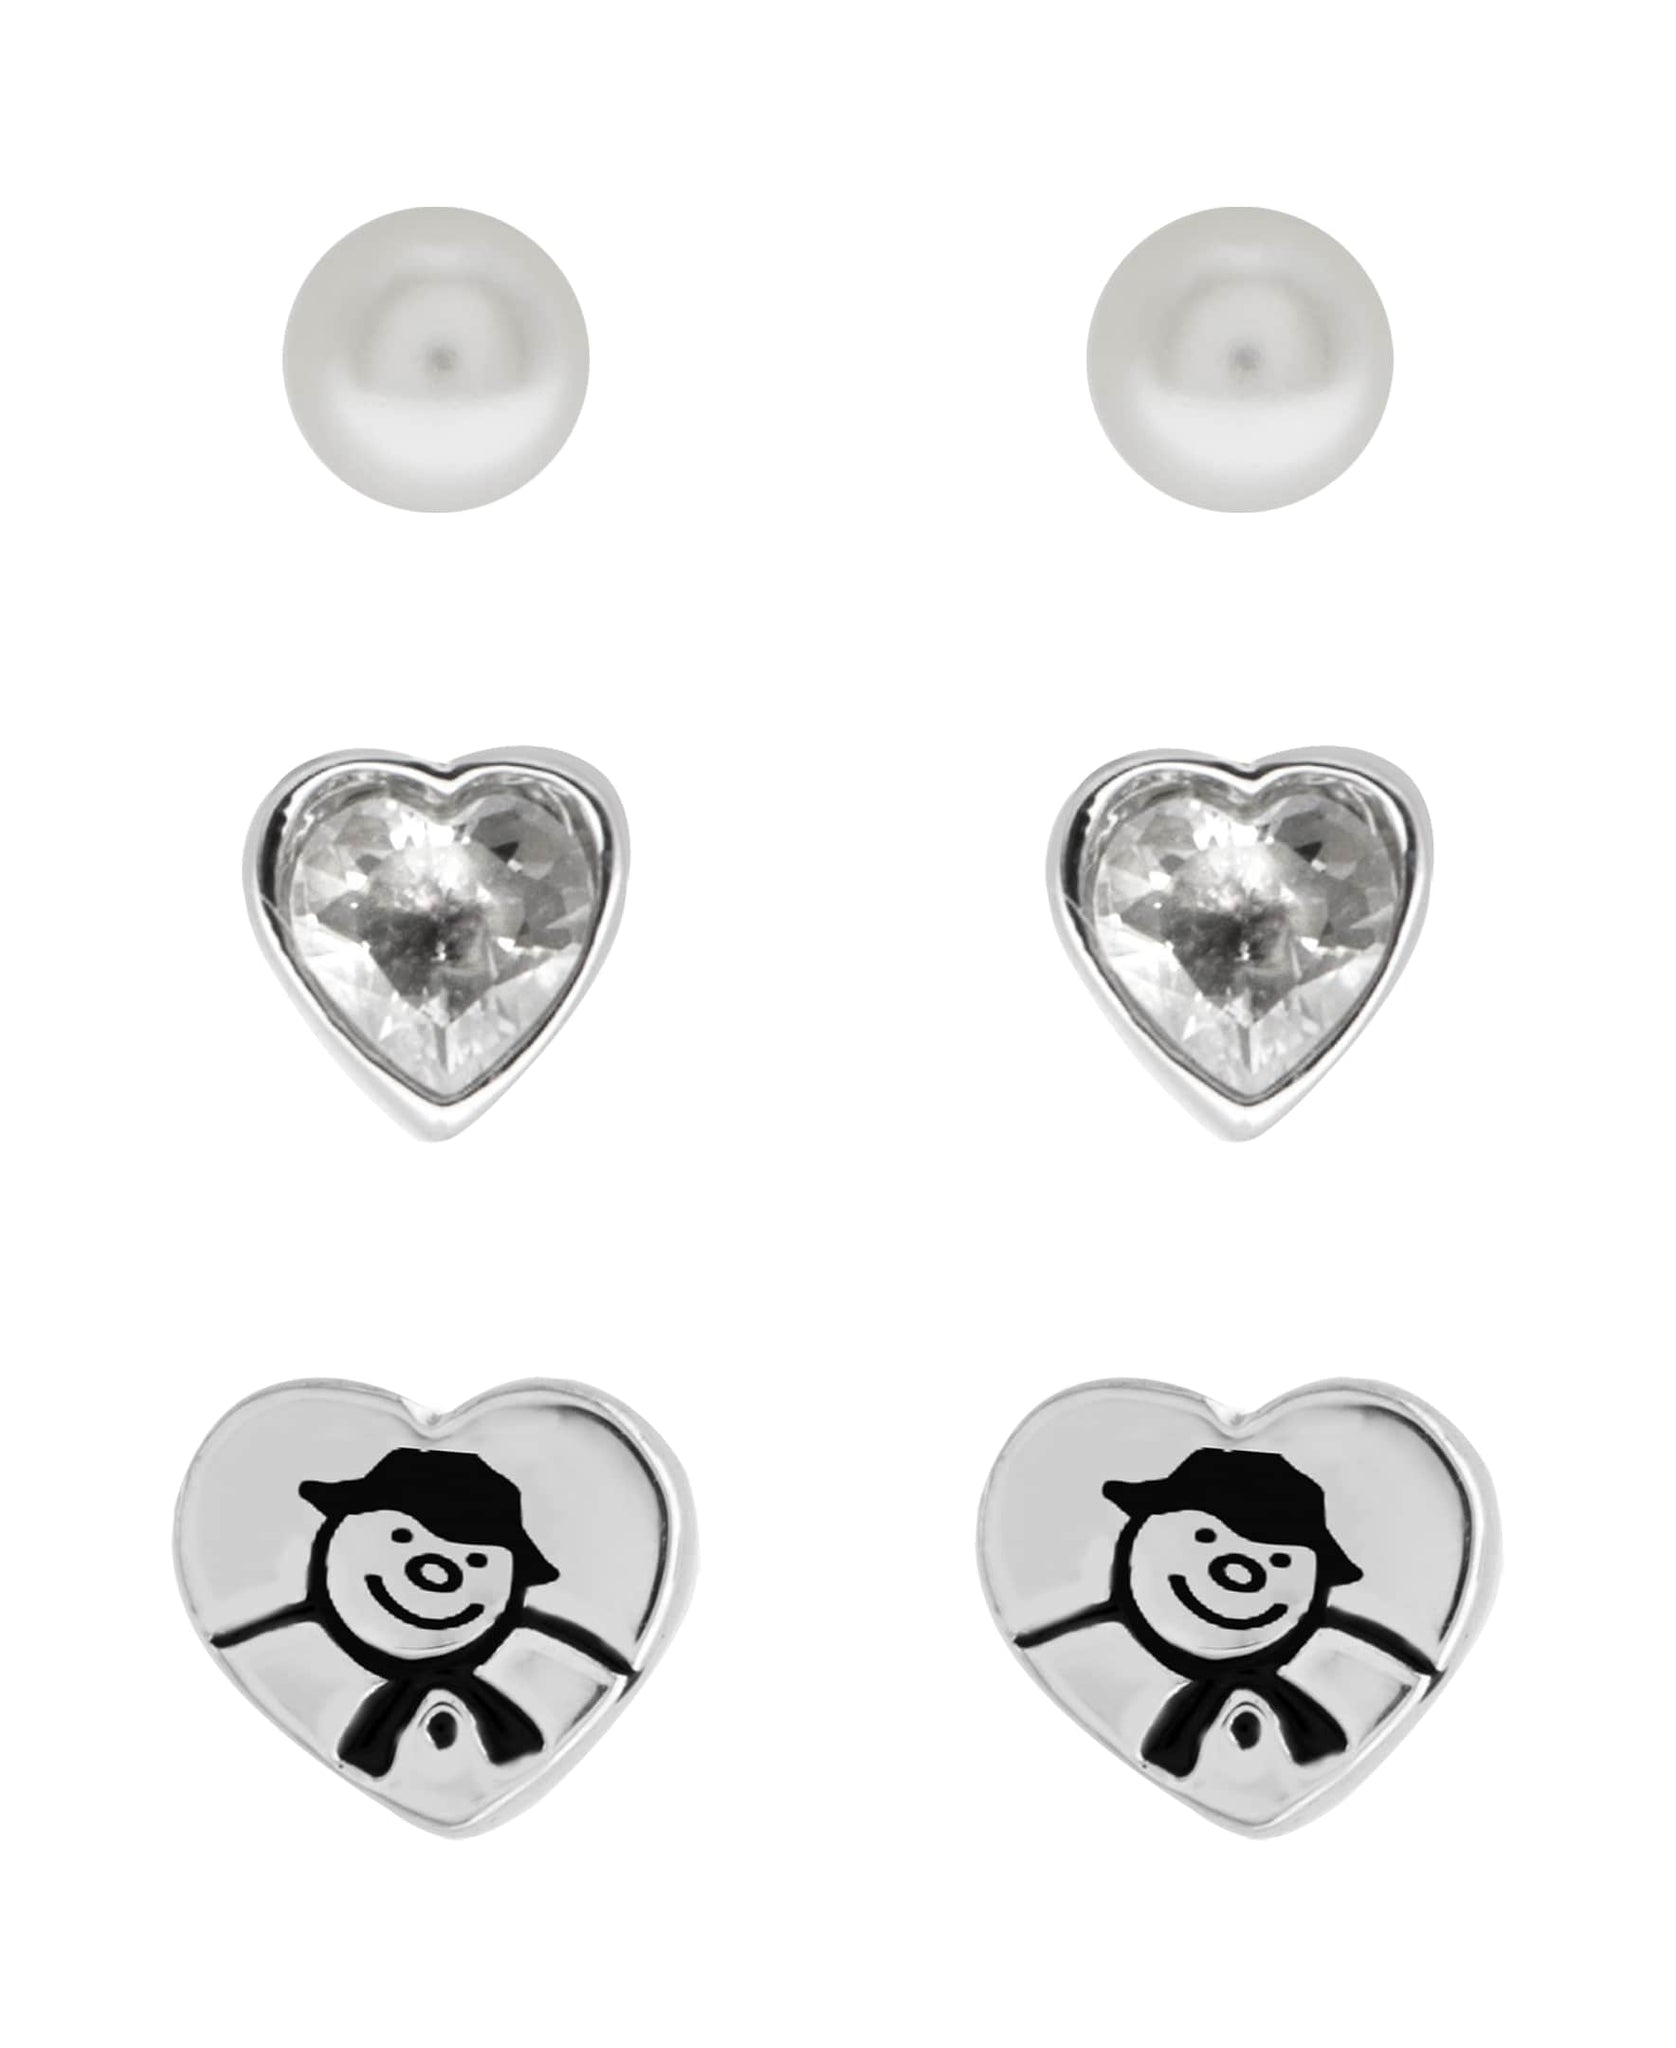 Snowman Cubic Zirconia Heart Set of 3 Stud Earrings - Rhona Sutton Jewellery